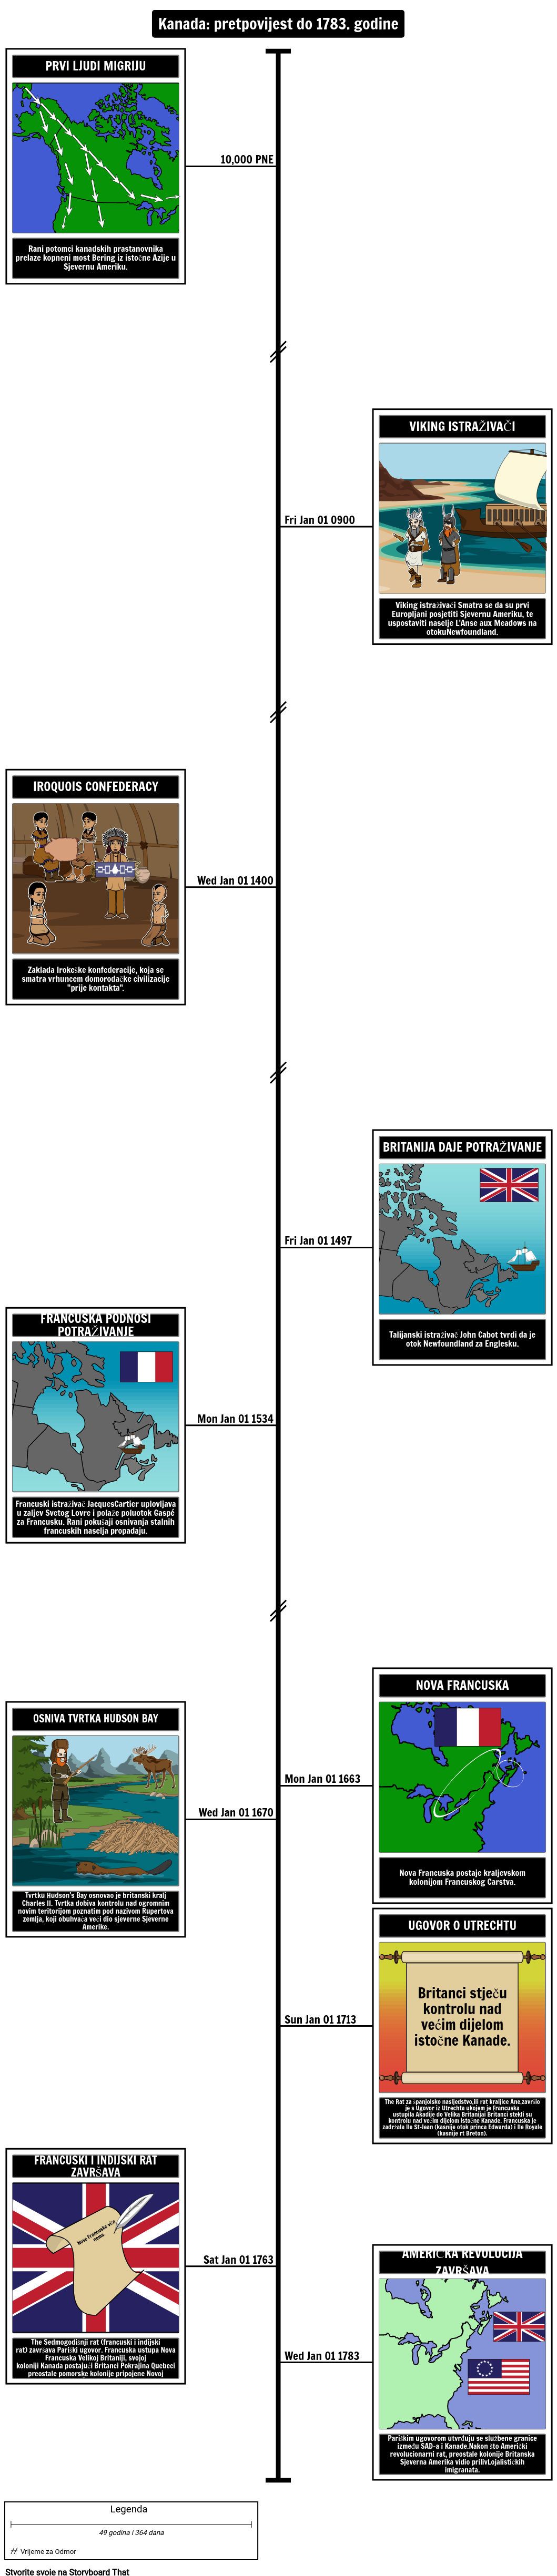 Kanadska povijest Timeline Pretpovijest do 1783. godine